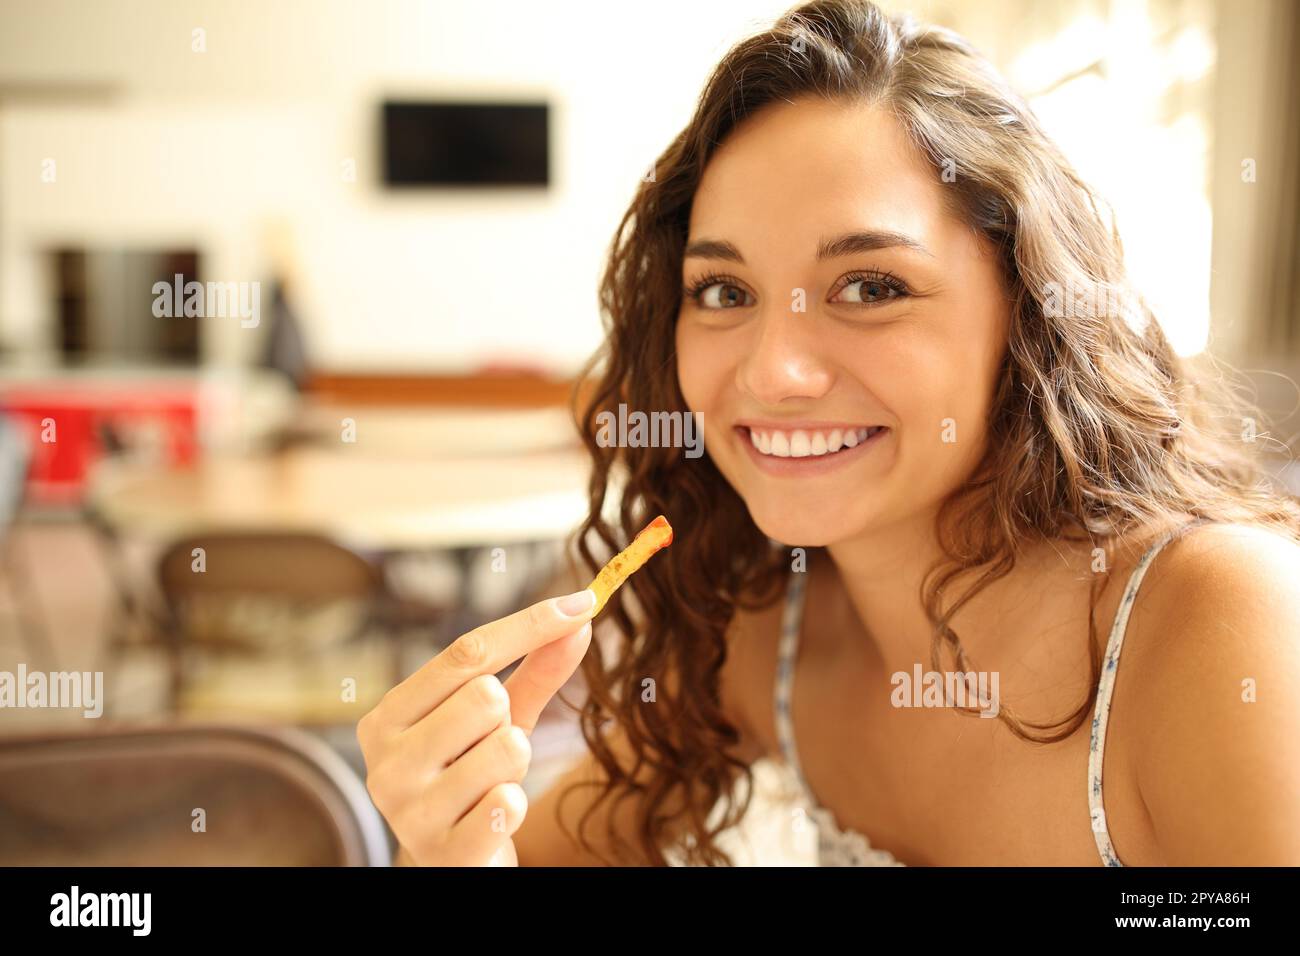 Femme heureuse dans un café mangeant de la potatoe Banque D'Images